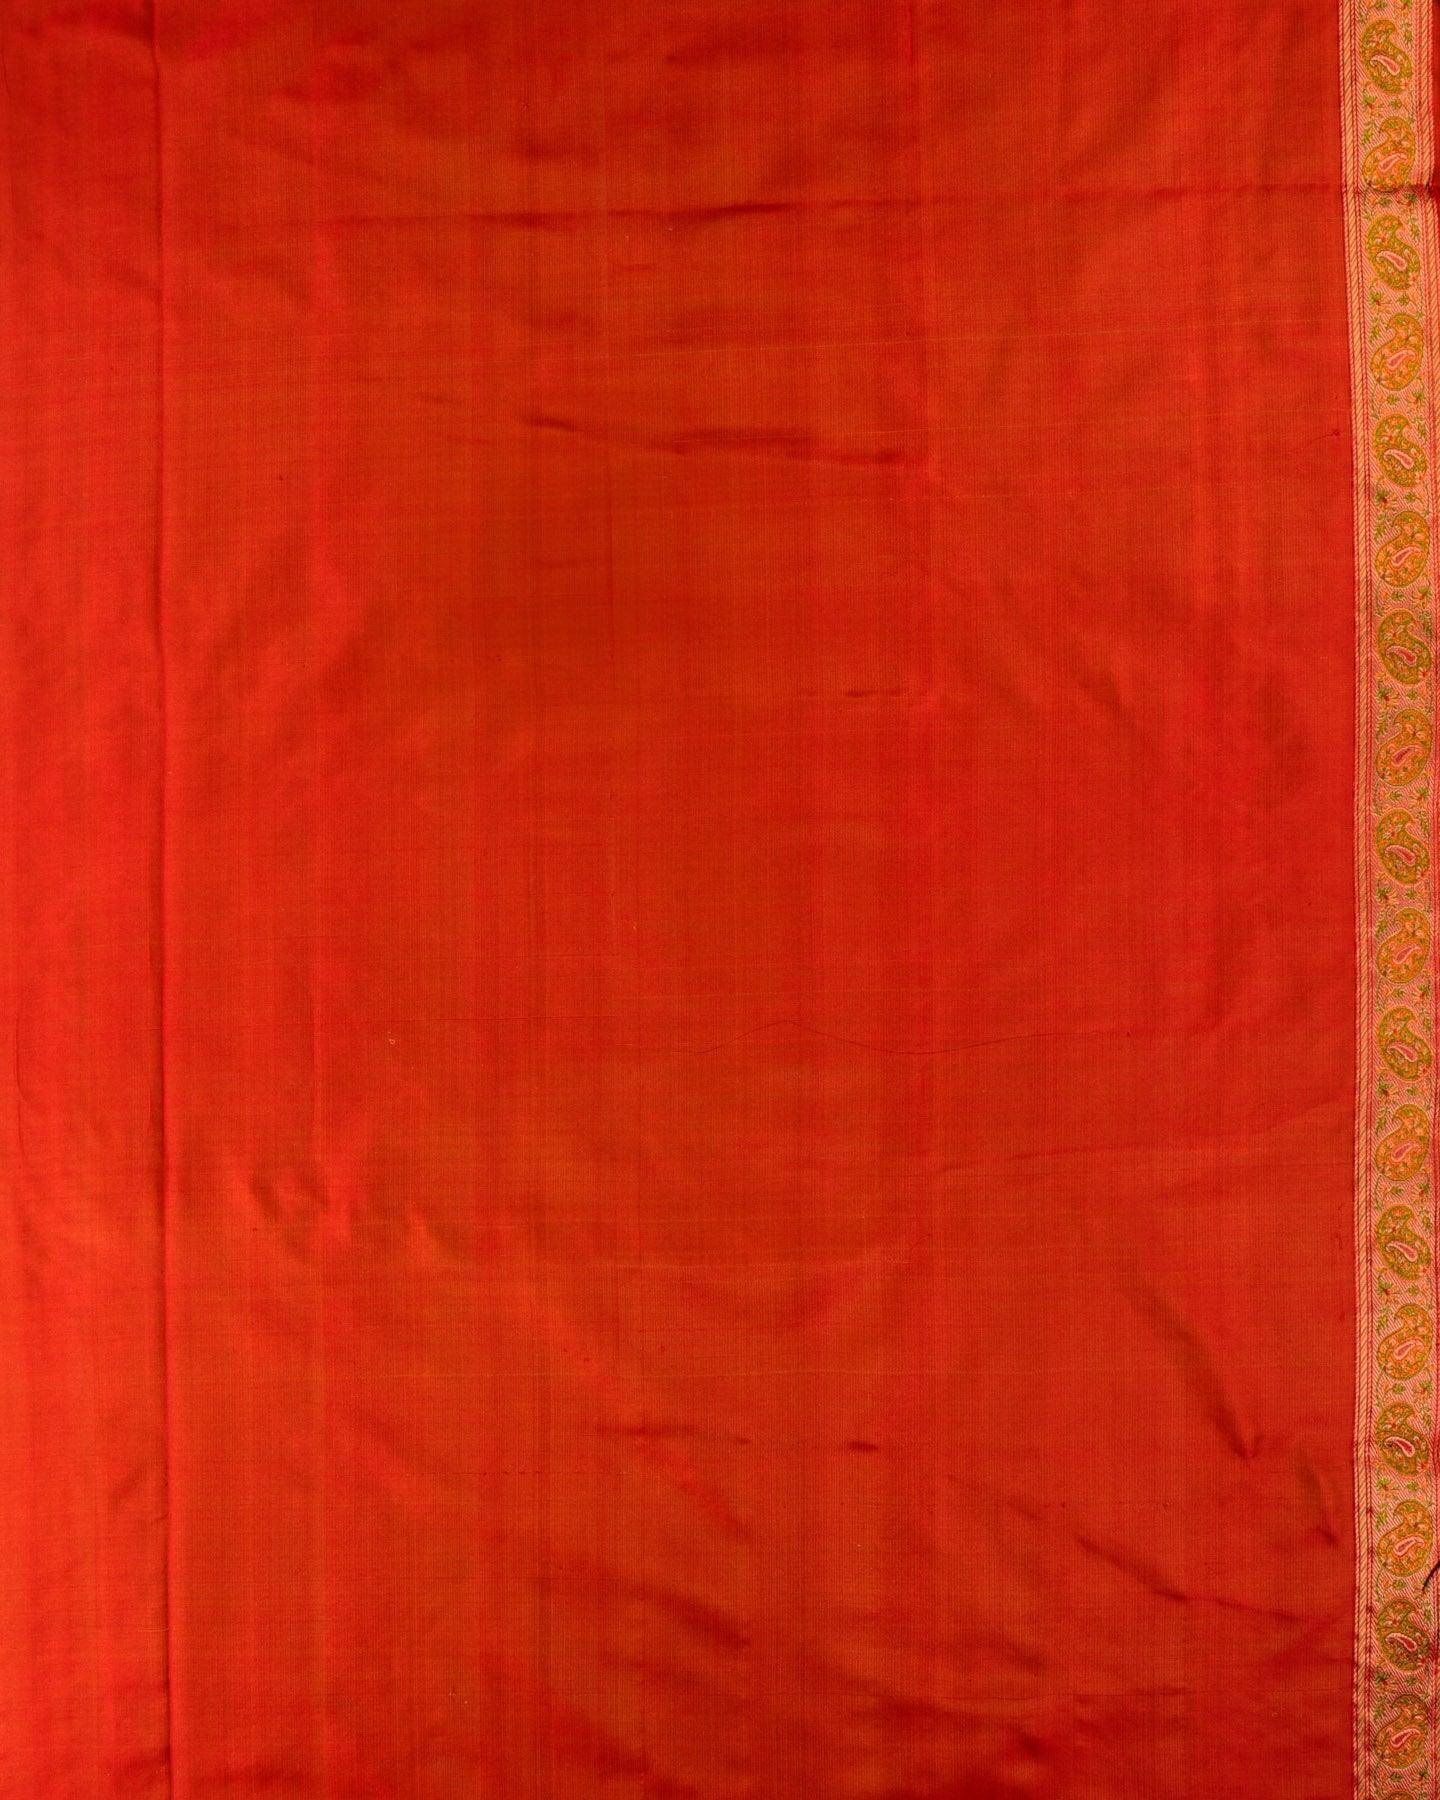 Metallic Maroon Banarasi Tehri Jamawar Handwoven Katan Tissue Saree - By HolyWeaves, Benares